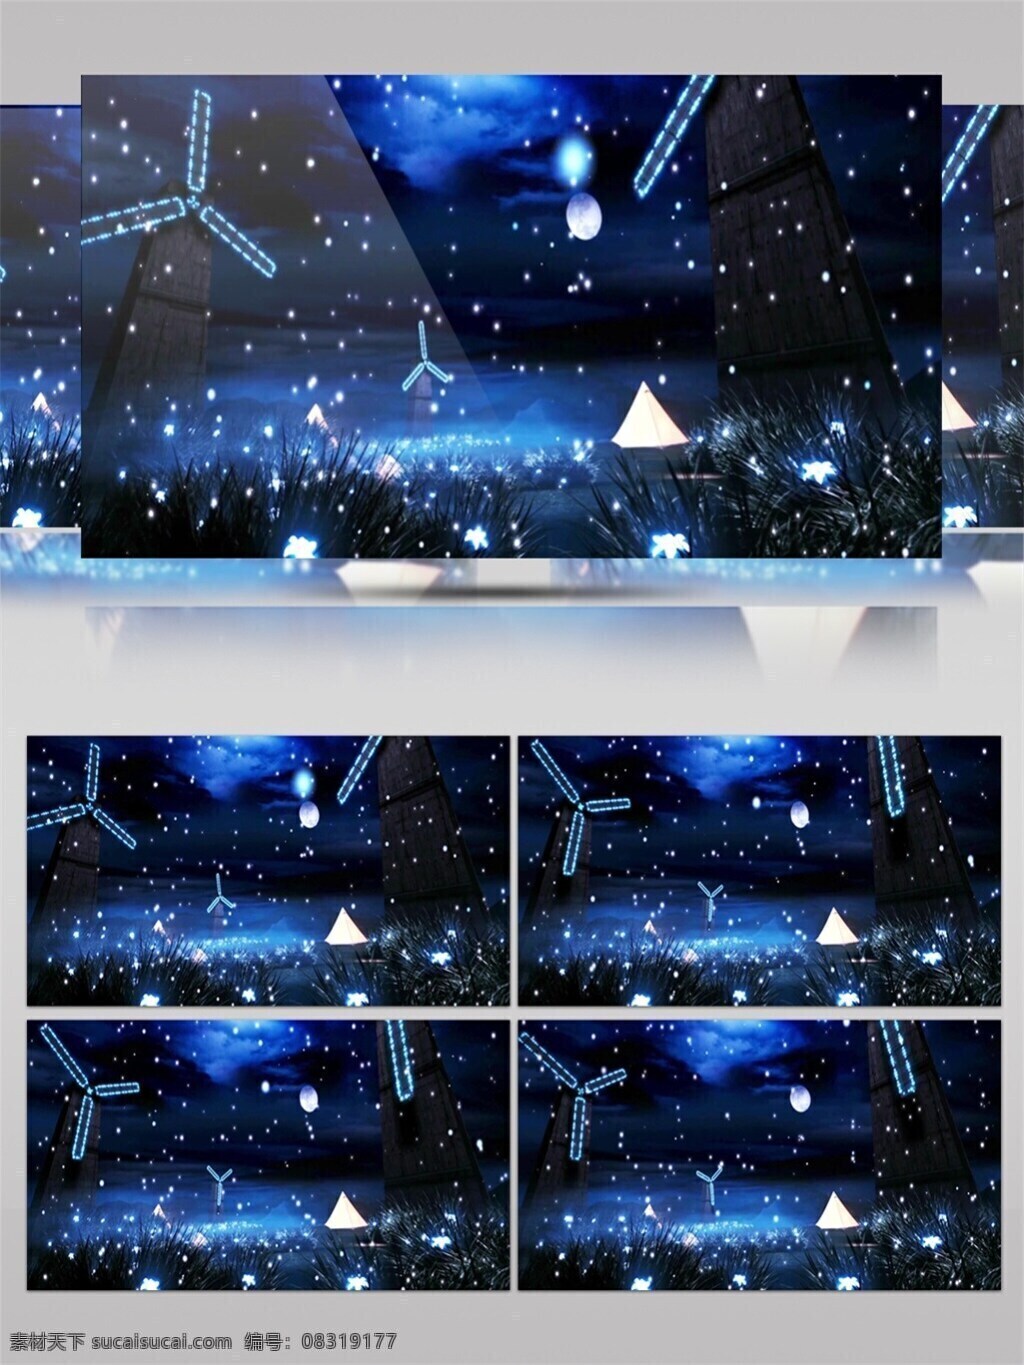 蓝色 雪夜 诞 节 视频 高质量 背景 蓝色夜景 美景动态背景